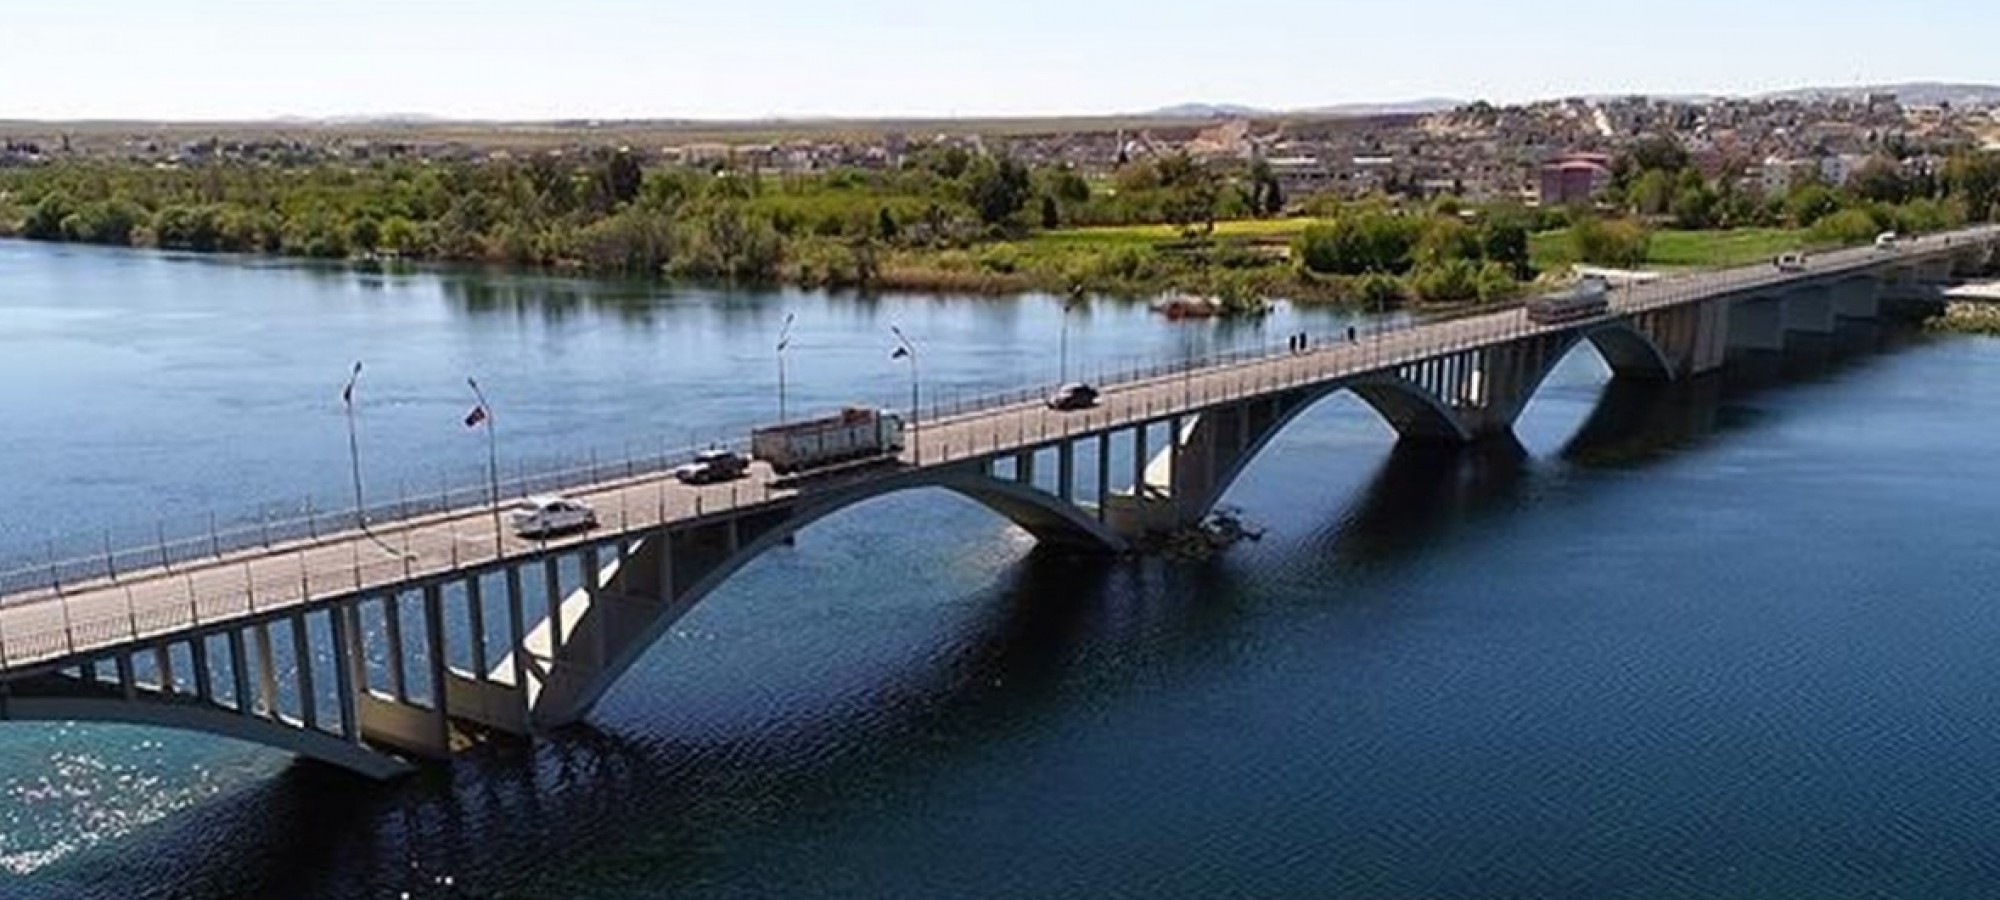 Birecik'te Suriyeli şahıs köprüden Fırat Nehri'ne atlayarak intihar etti;